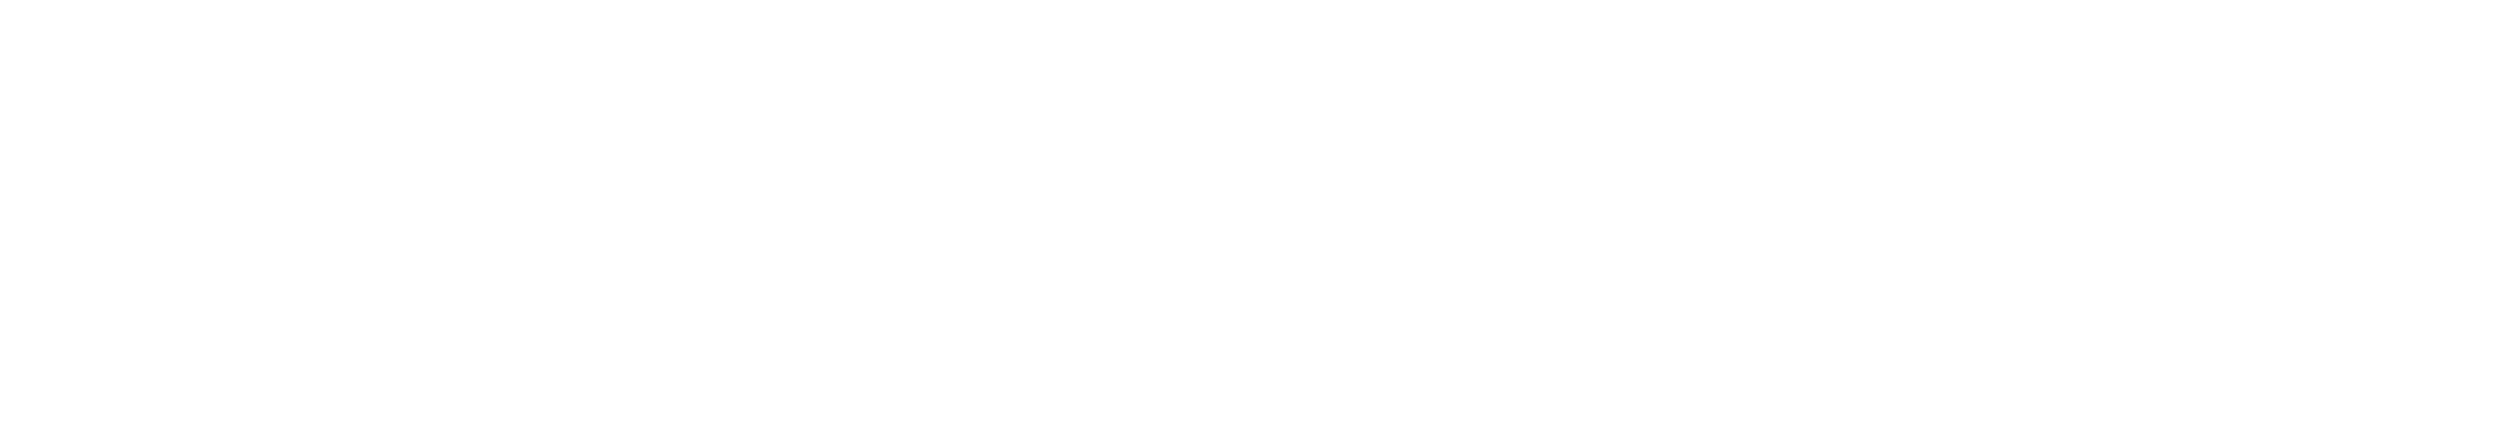 Blue Light Card Logo - Discounts